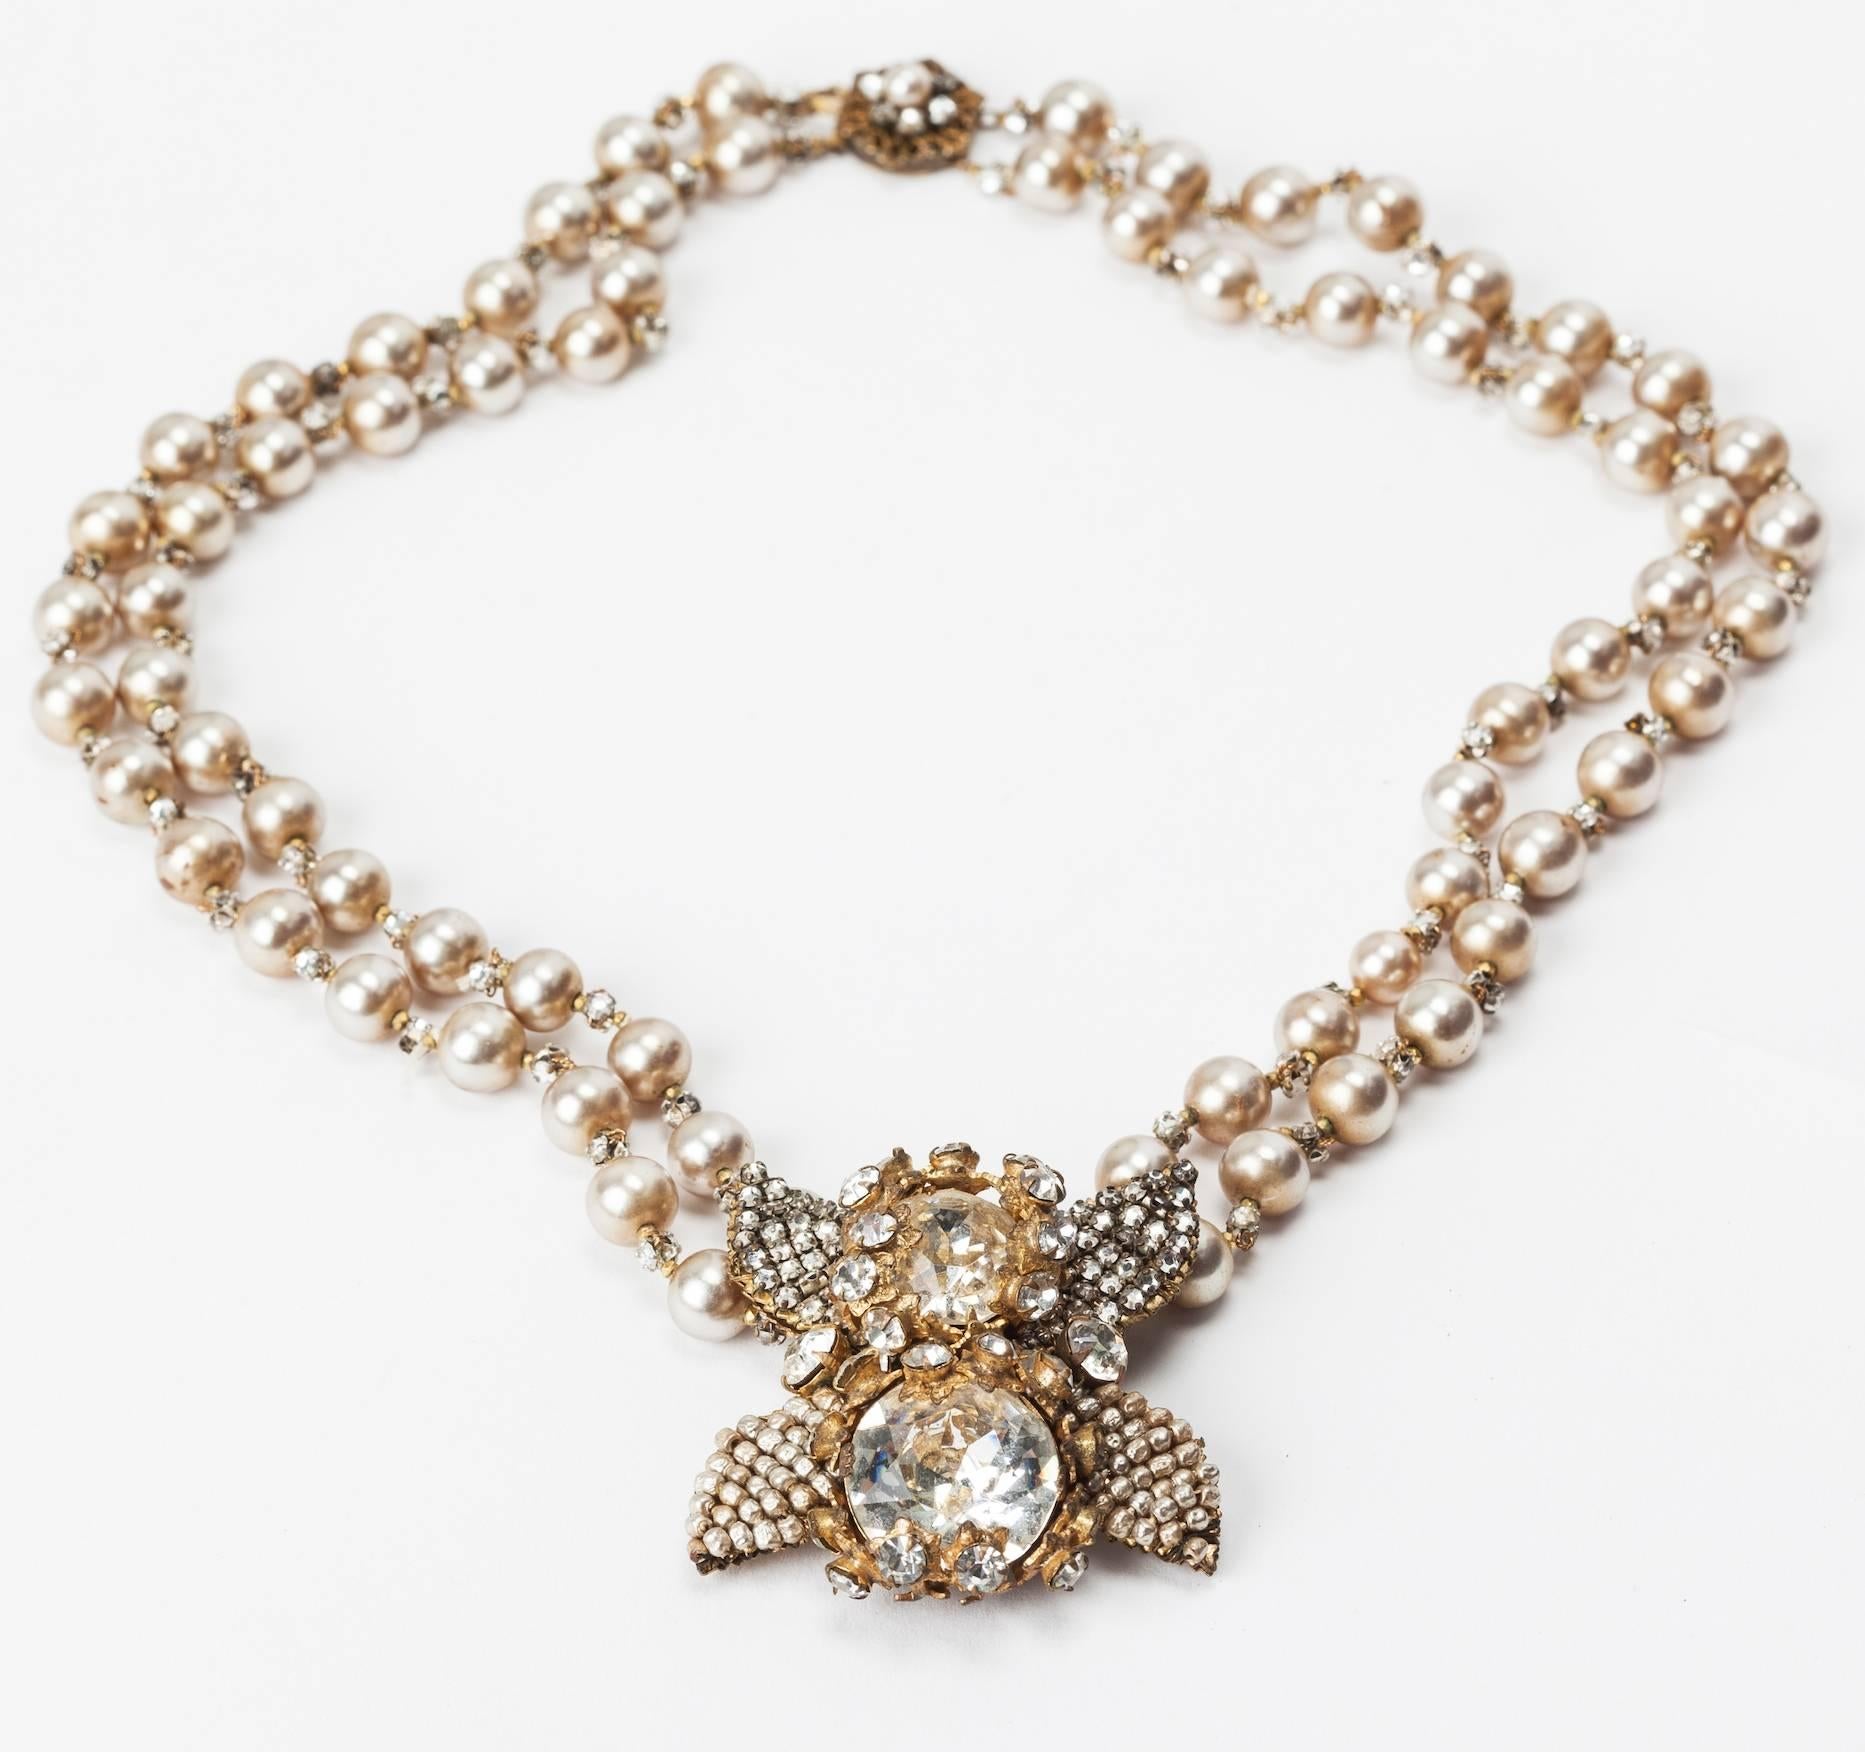 Superbe collier en fausses perles à deux brins de Miriam Haskell. Le pendentif central est composé de deux grandes pierres en pâte de cristal facettées, serties dans des filigranes dorés russes pavés. Ces pierres sont en outre ornées de feuilles de